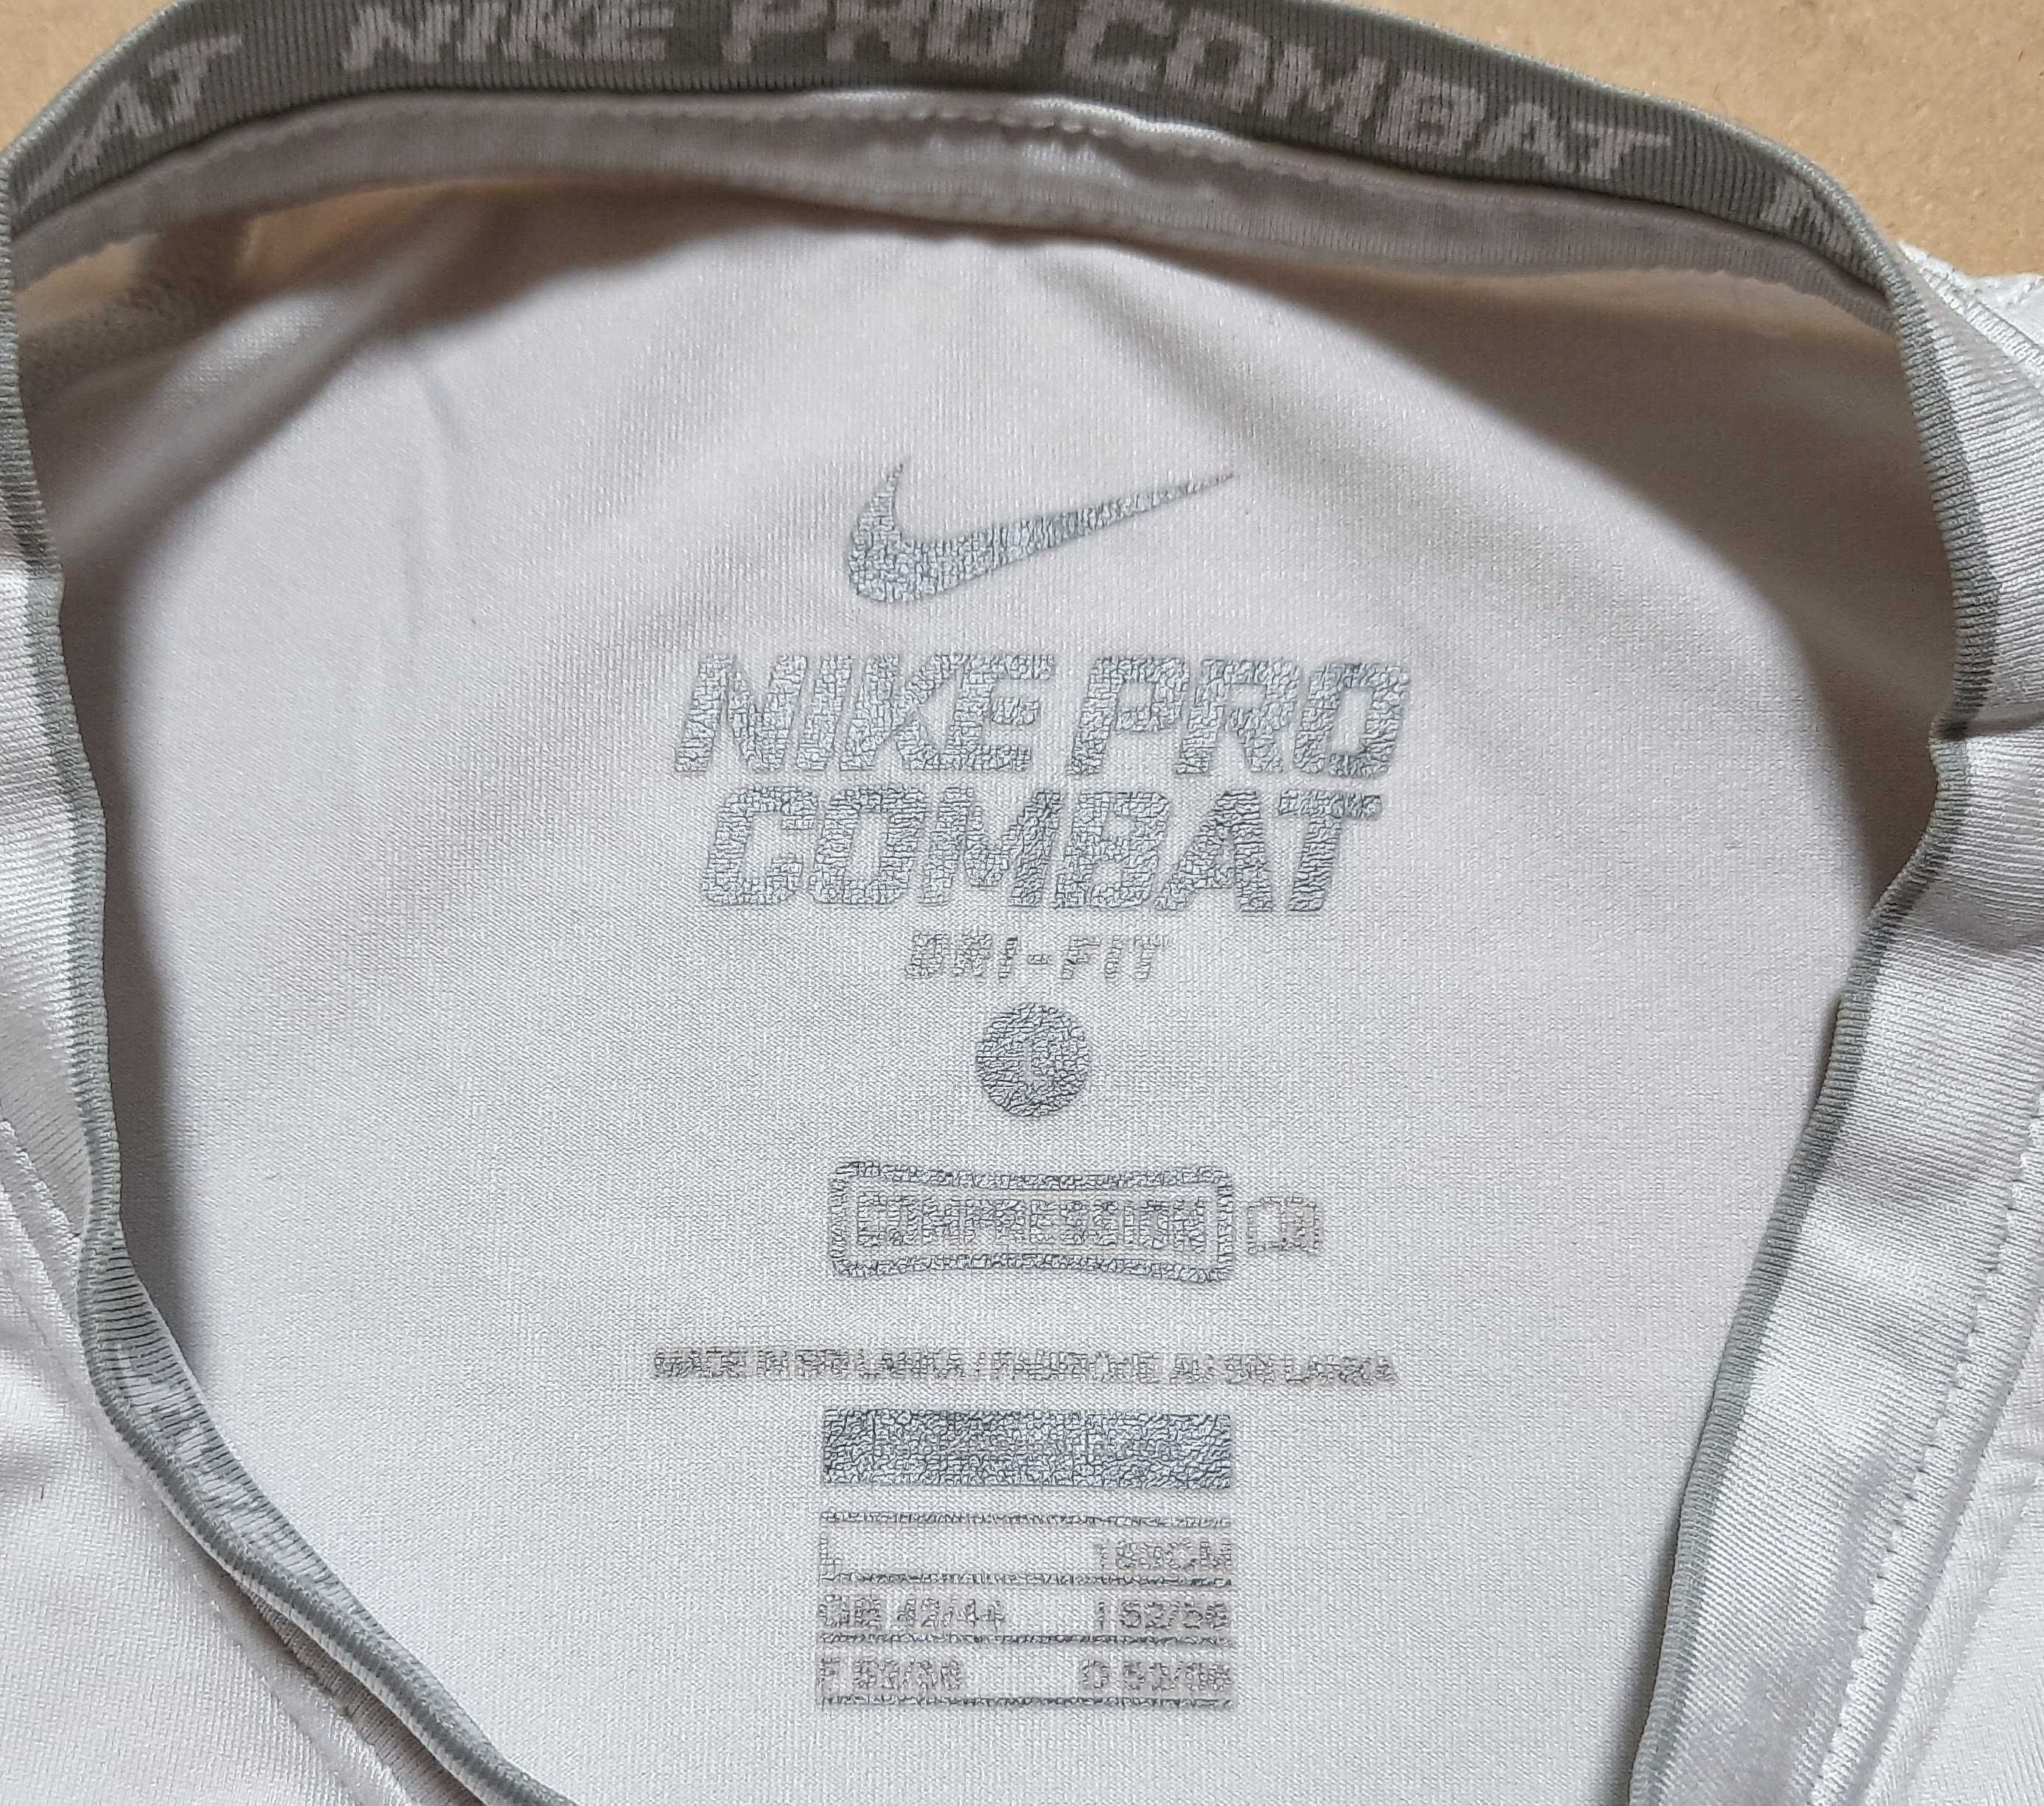 Nike Pro Combat Core Compression 2.0 L Компресійна спортивна футболка